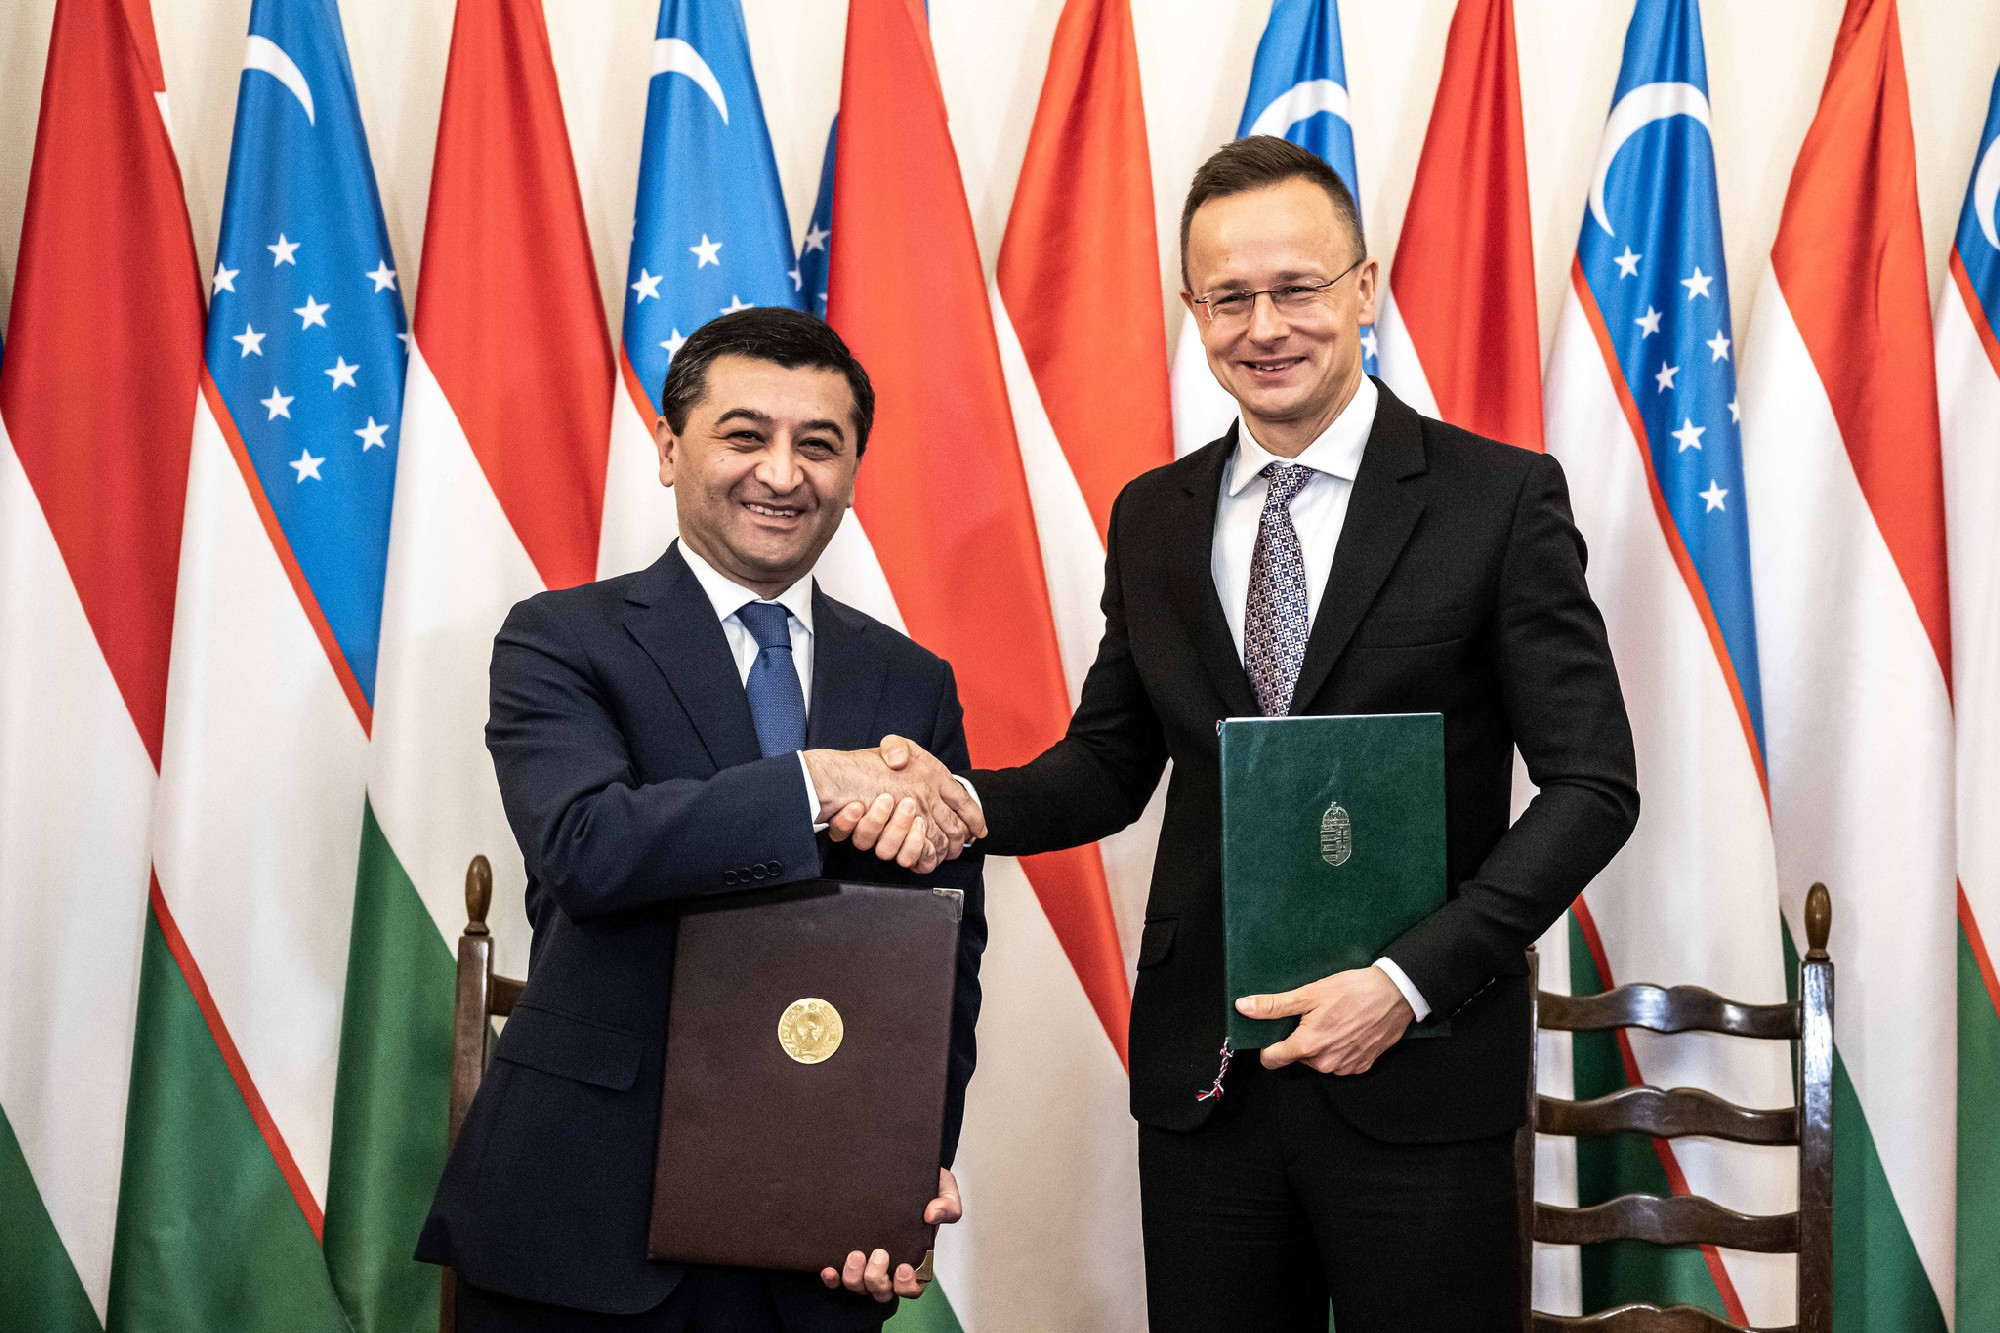 „Diplomáciatörténeti esemény” – Szijjártó bejelentette, hogy megnyílt Üzbegisztán budapesti nagykövetsége